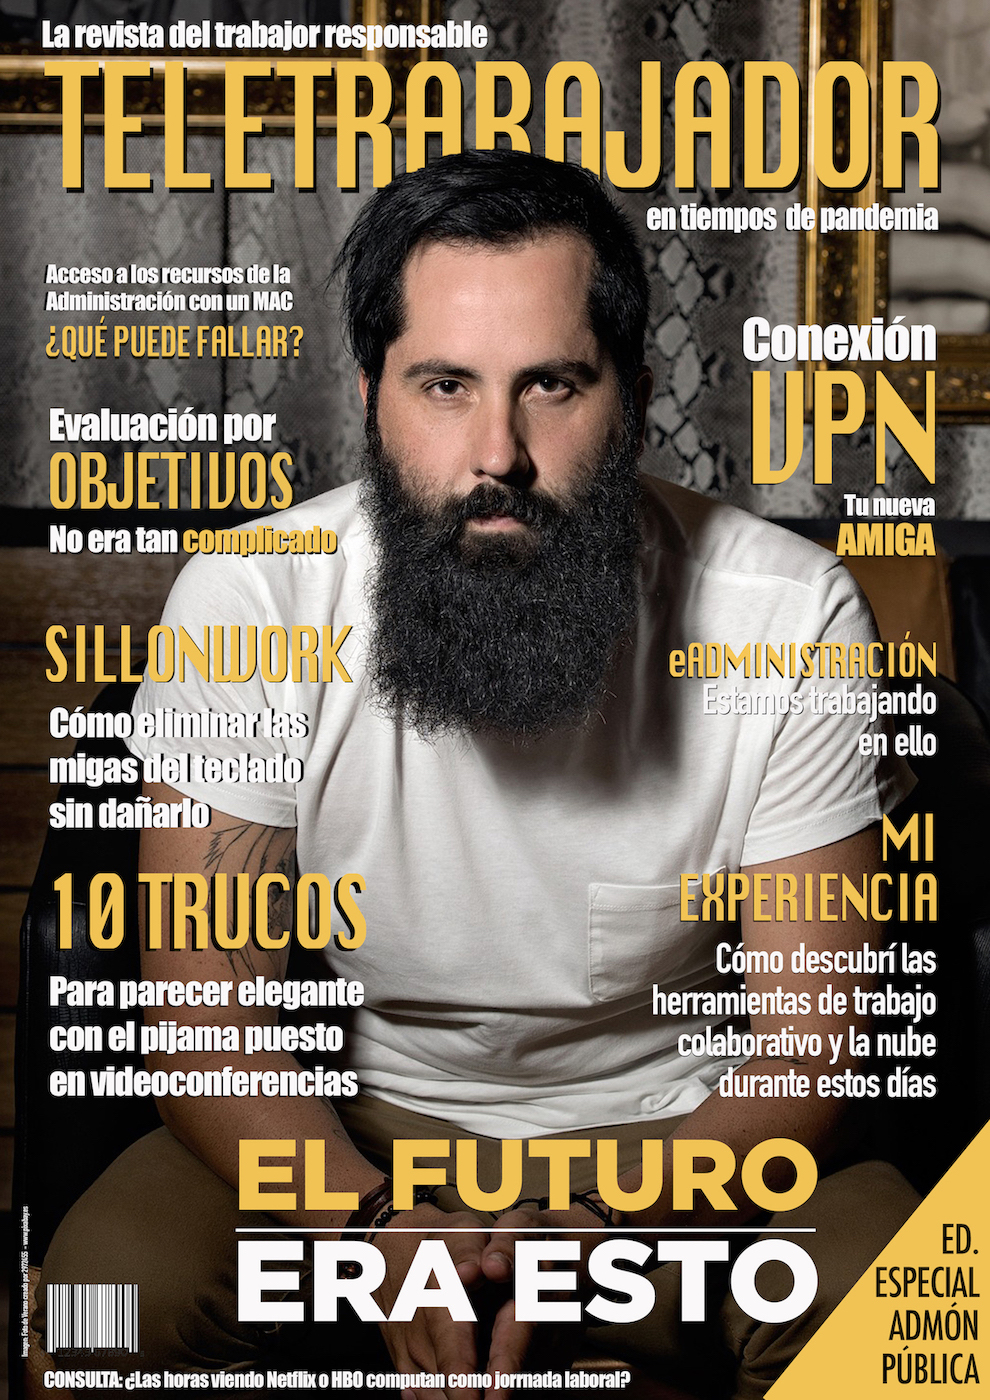 <p>Revista ficticia <em>Arquetipos de cuarentena </em>(nº13, 'Teletrabajador').</p>